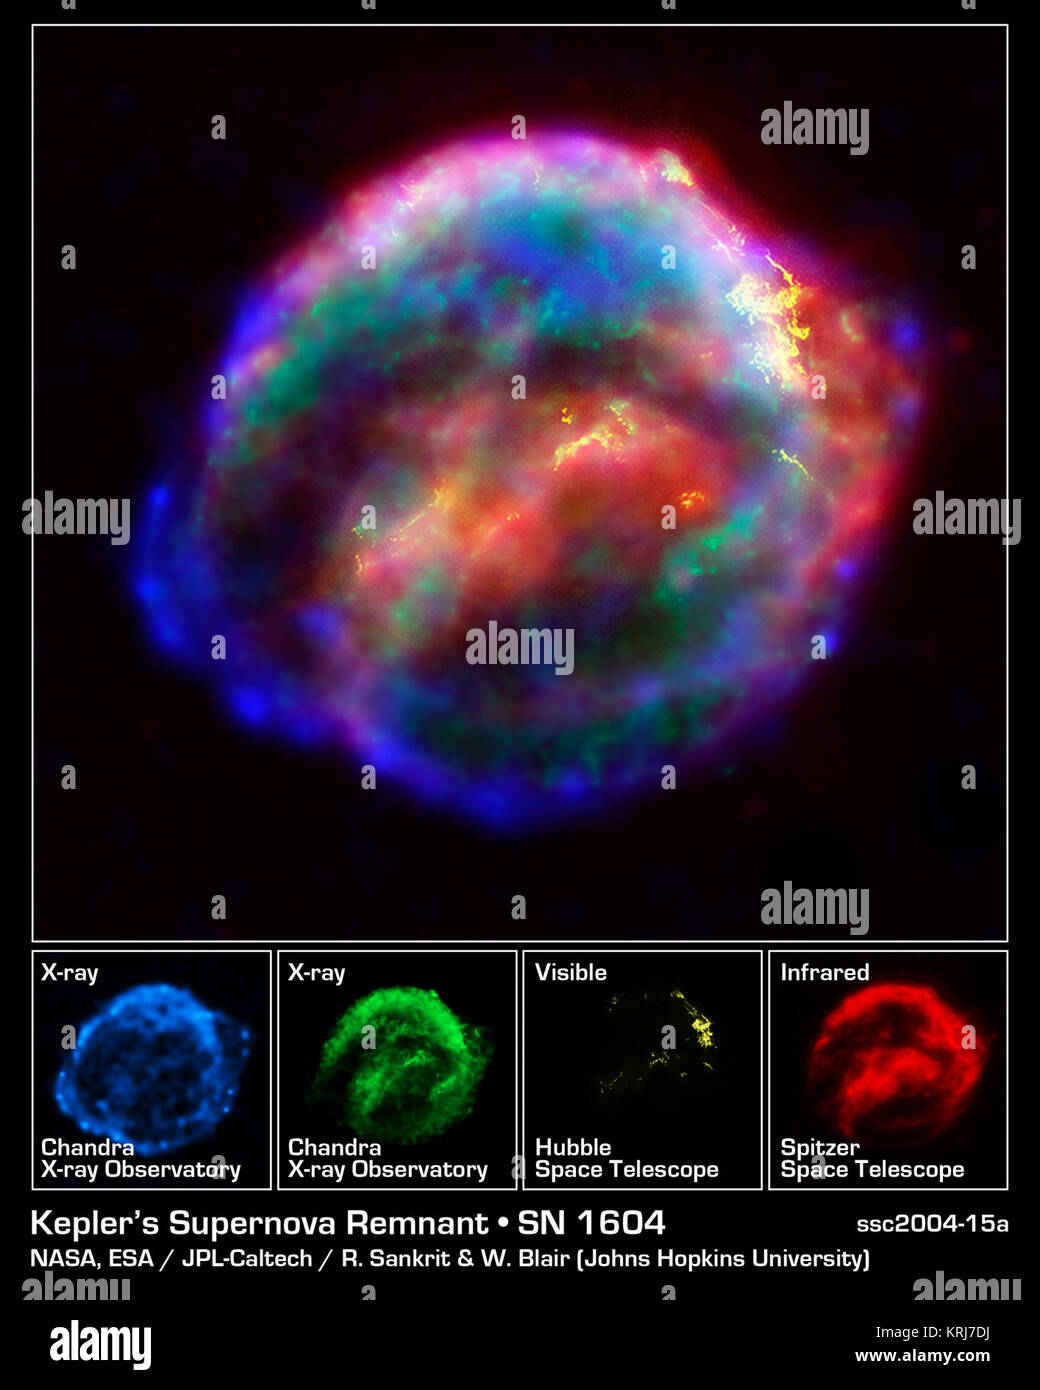 Die NASA drei großen Observatorien - das Hubble Space Teleskop, das Spitzer Space Telescope, das Chandra X-ray Observatory - zusammengeschlossen, um den Ausbau der Überreste einer Supernova, genannt Keplers Supernova Überrest, der vor 400 Jahren von sky Watcher, einschließlich der berühmte Astronom Johannes Kepler gesehen. Das kombinierte Bild stellt eine Blase - geformte Verkleidung aus Gas und Staub, die ist 14 Lichtjahre breit und wächst 4 Millionen Meilen pro Stunde (2.000 Kilometer pro Sekunde). Beobachtungen von jedem Teleskop markieren Verschiedene Funktionen der Supernovaüberrest, einem sich schnell bewegenden Shell von Eisen-r Stockfoto